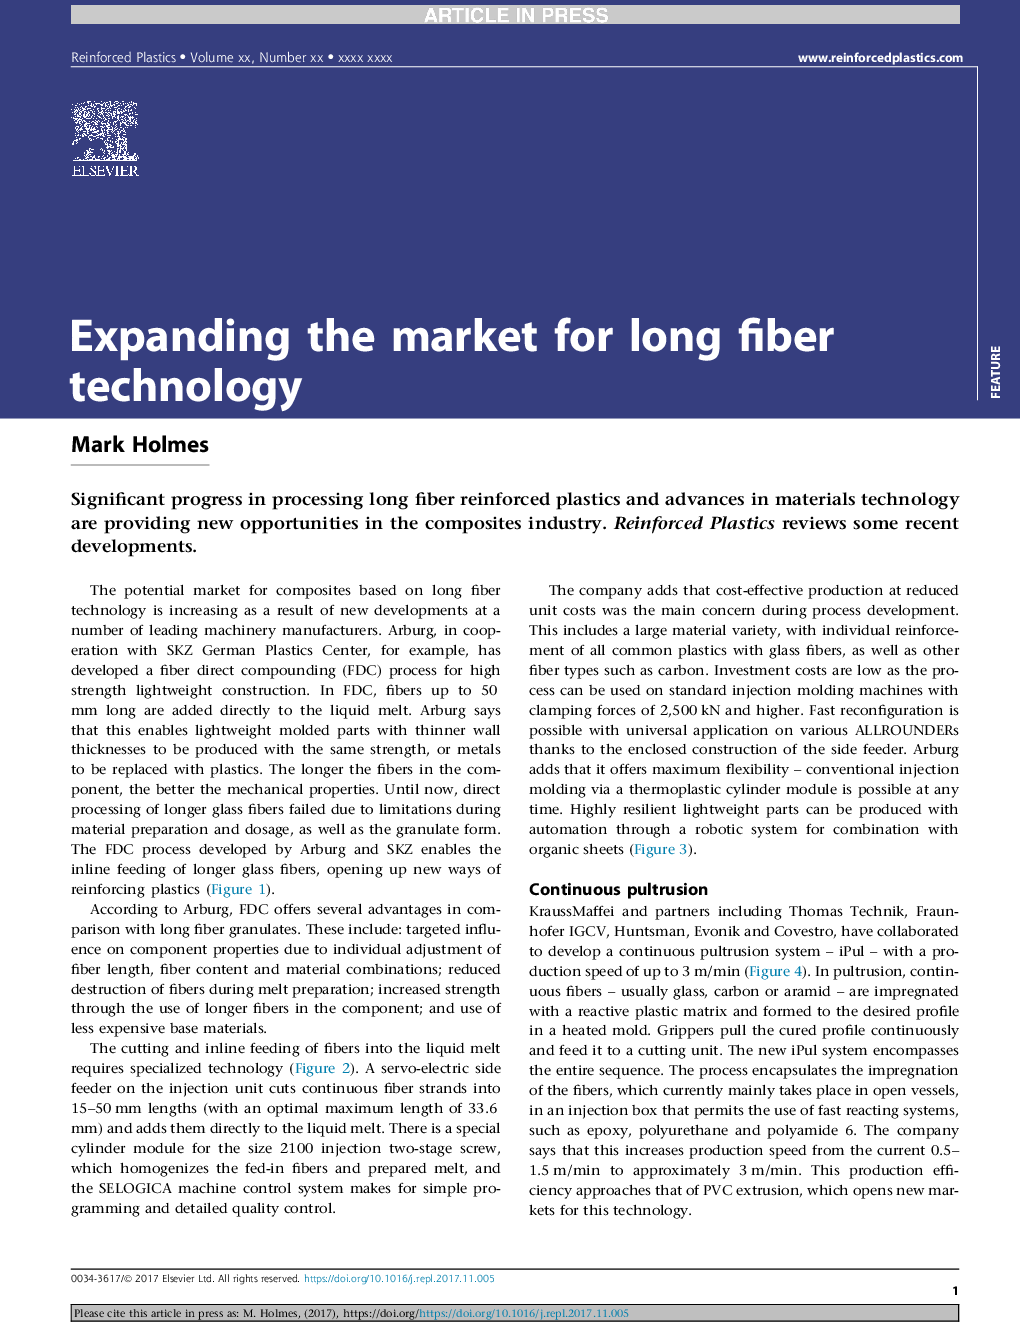 گسترش بازار برای تکنولوژی فیبر طولانی 